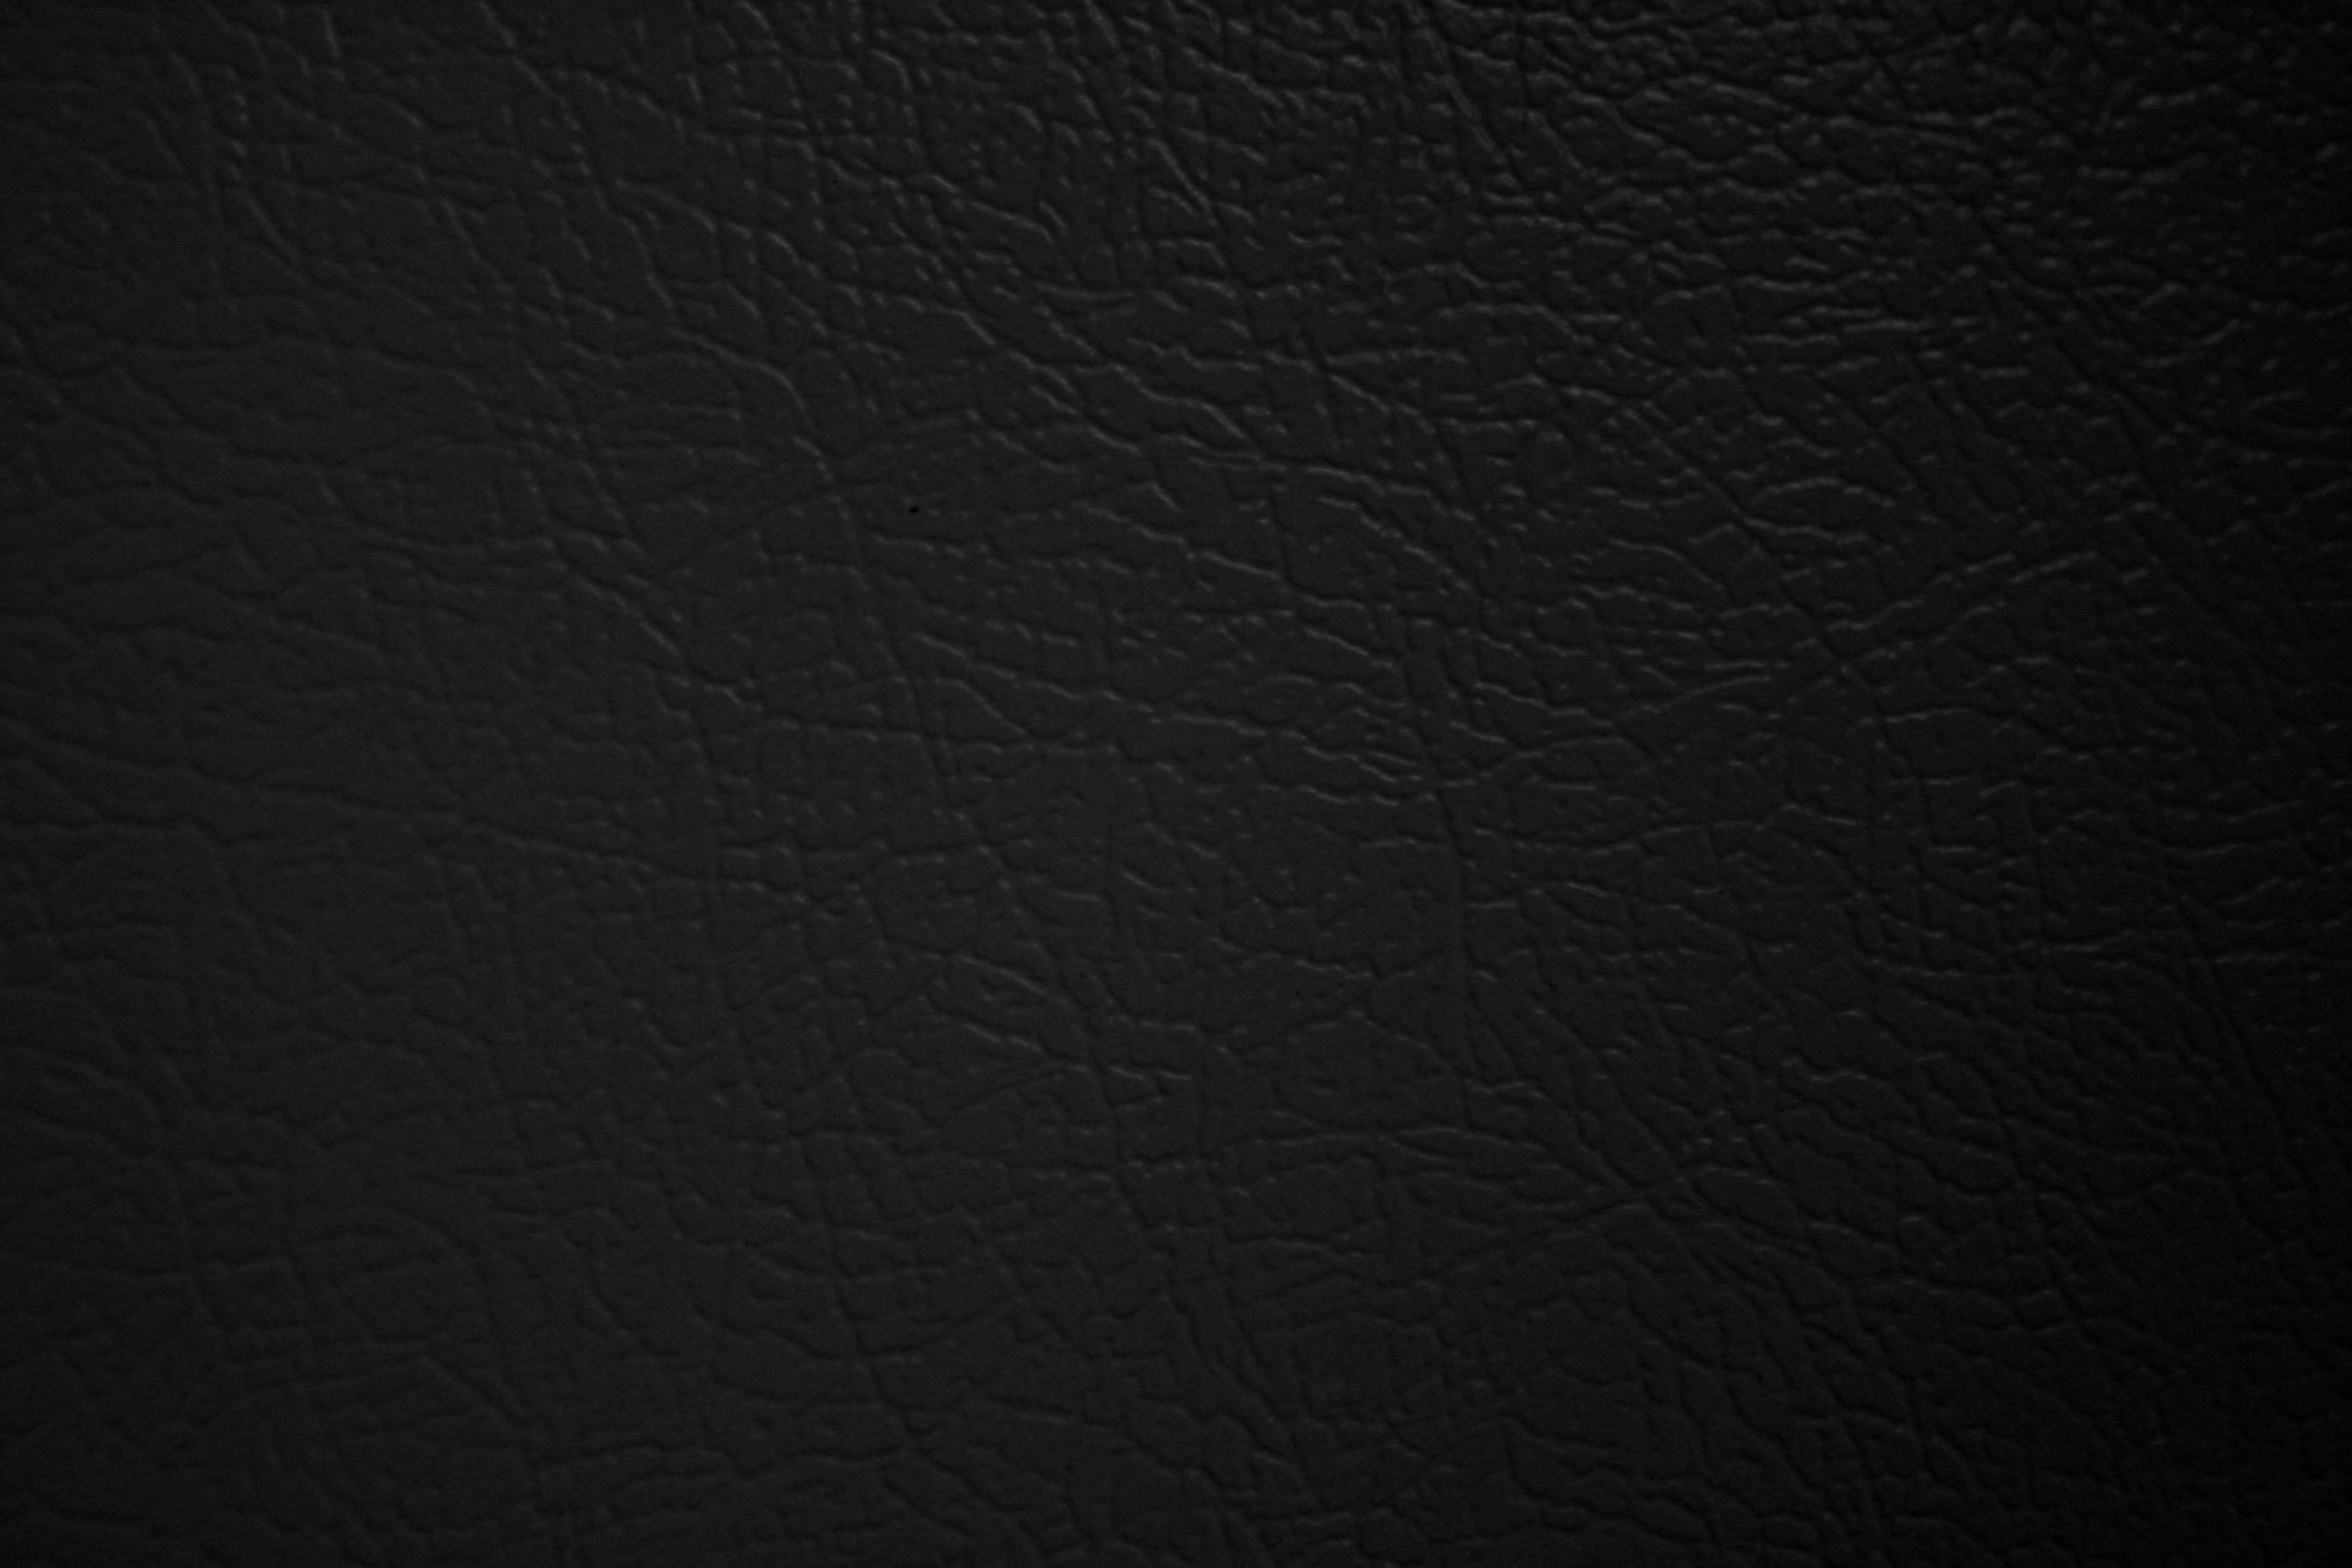 Black Faux Leather Texture Picture | Free Photograph | Photos Public Domain